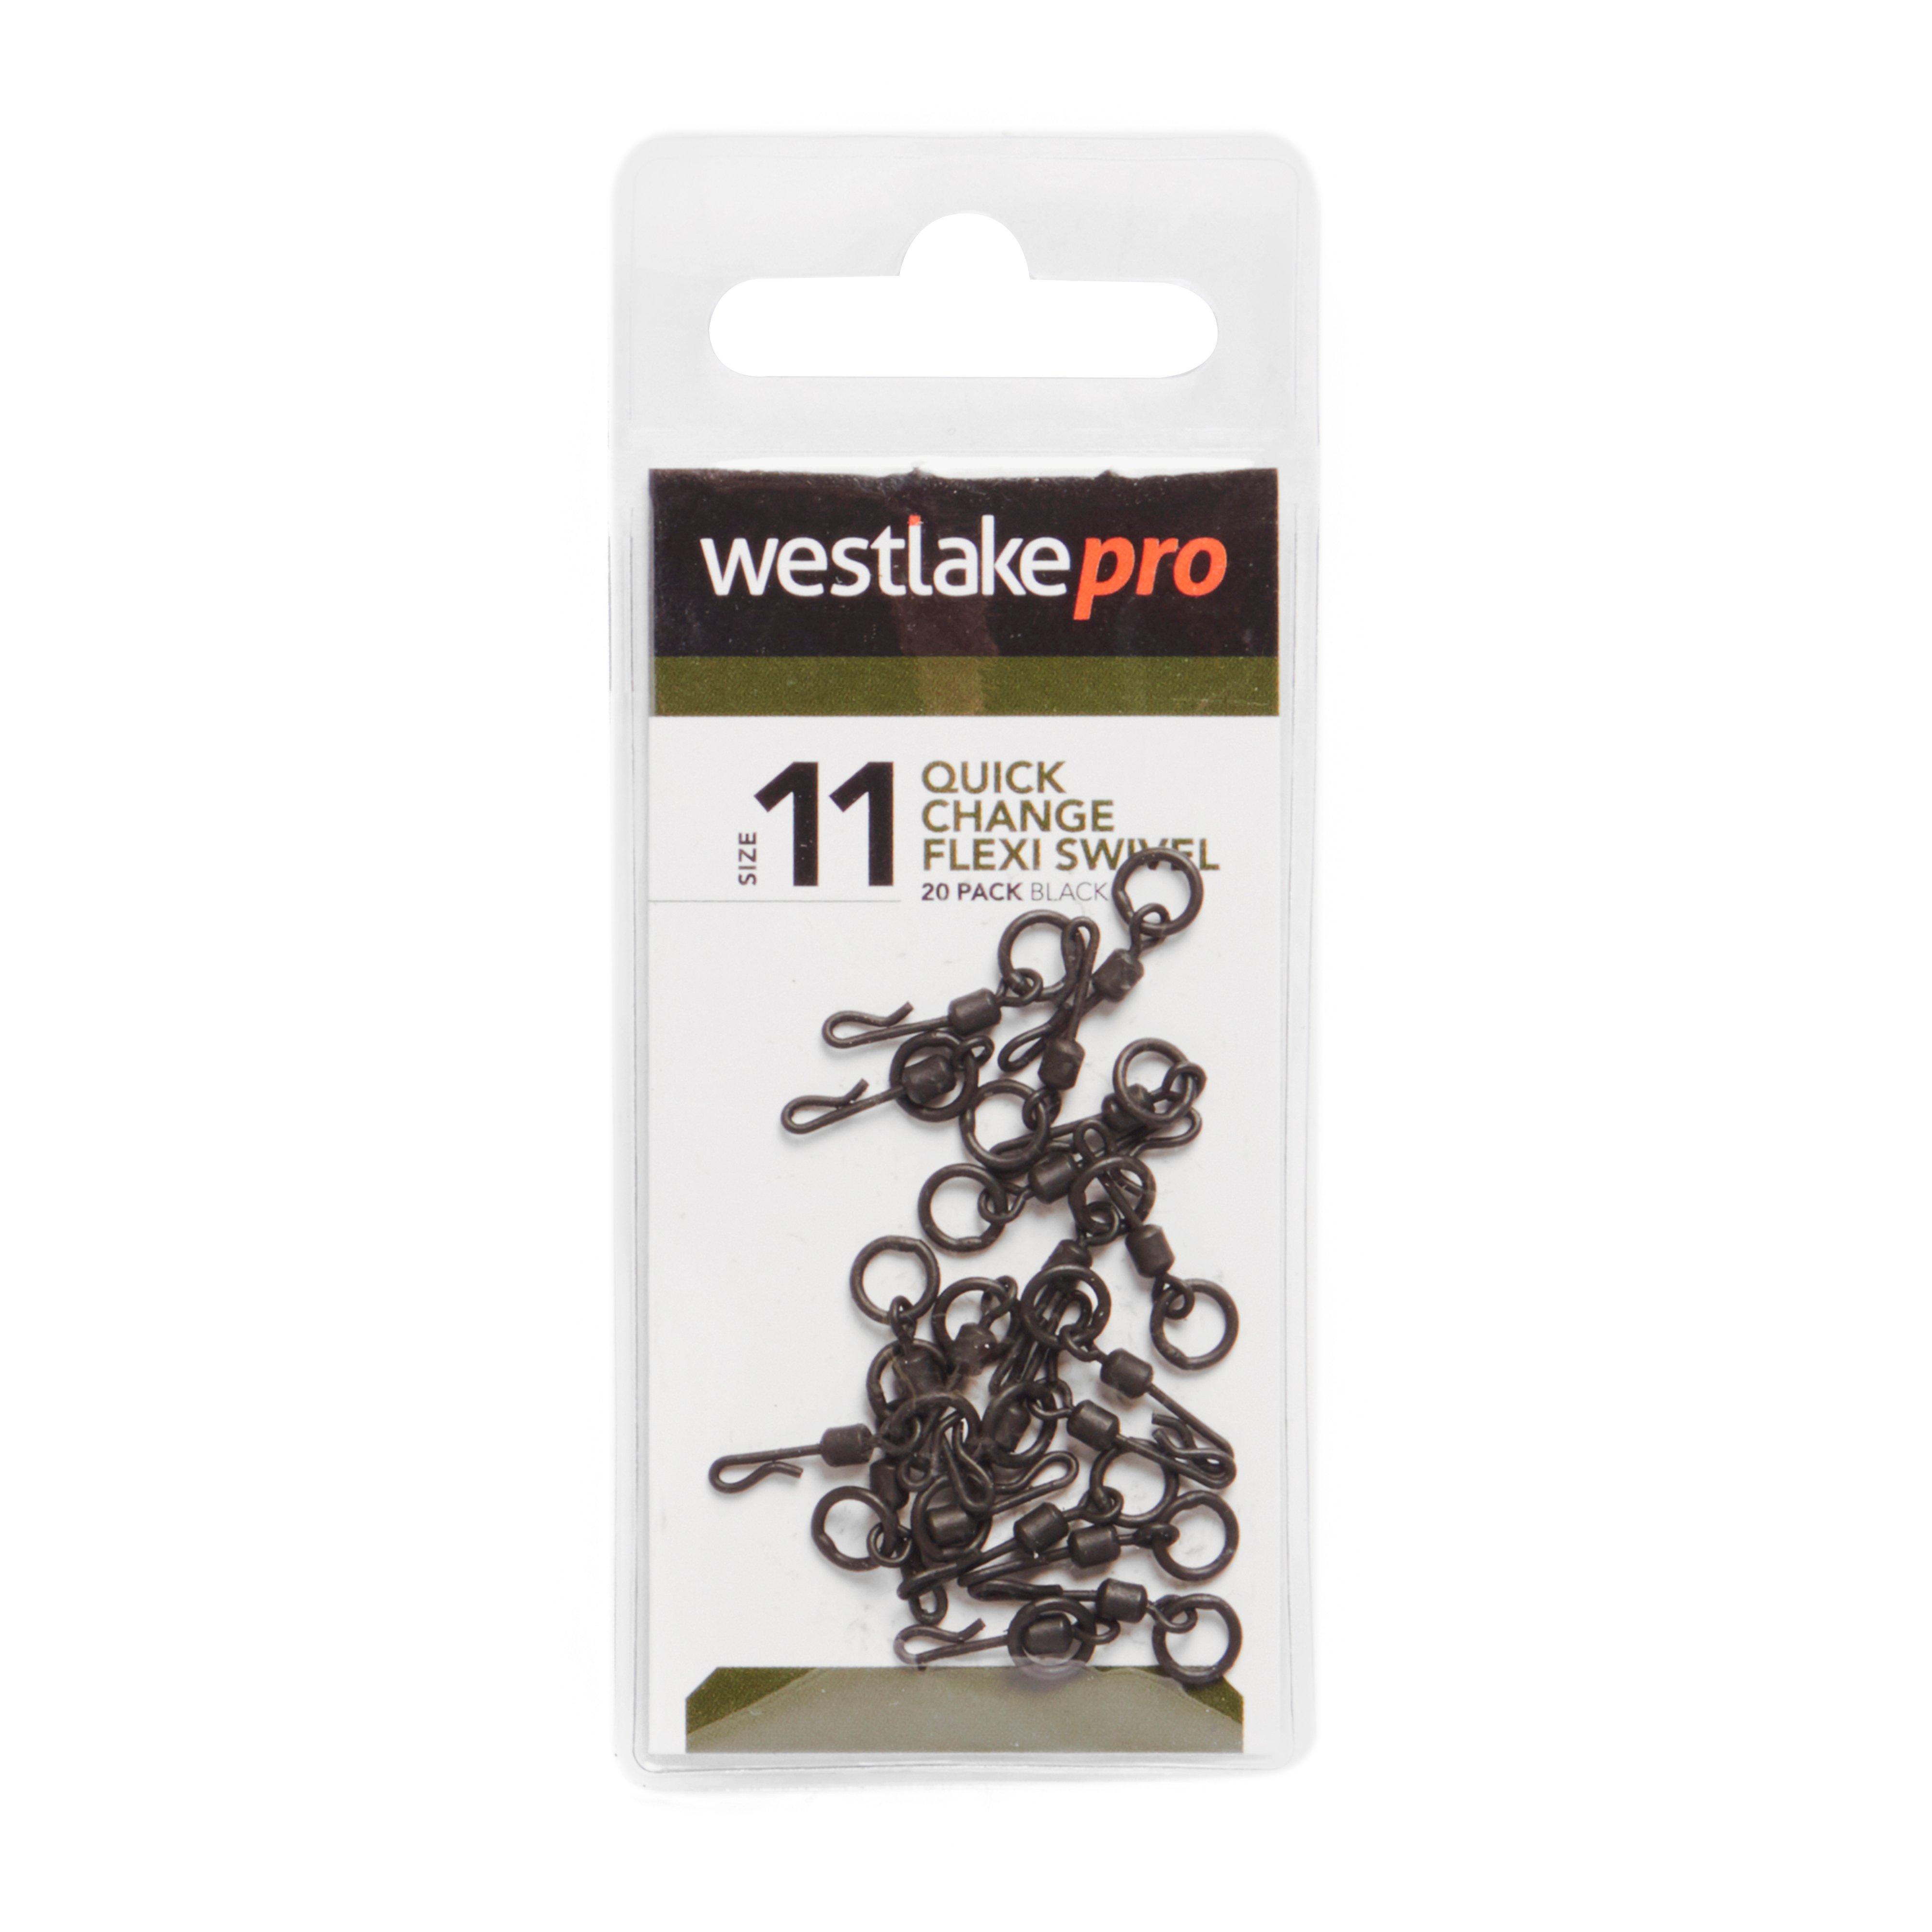 Westlake Qc Flex Ring Swivel S 11 20Pk Review